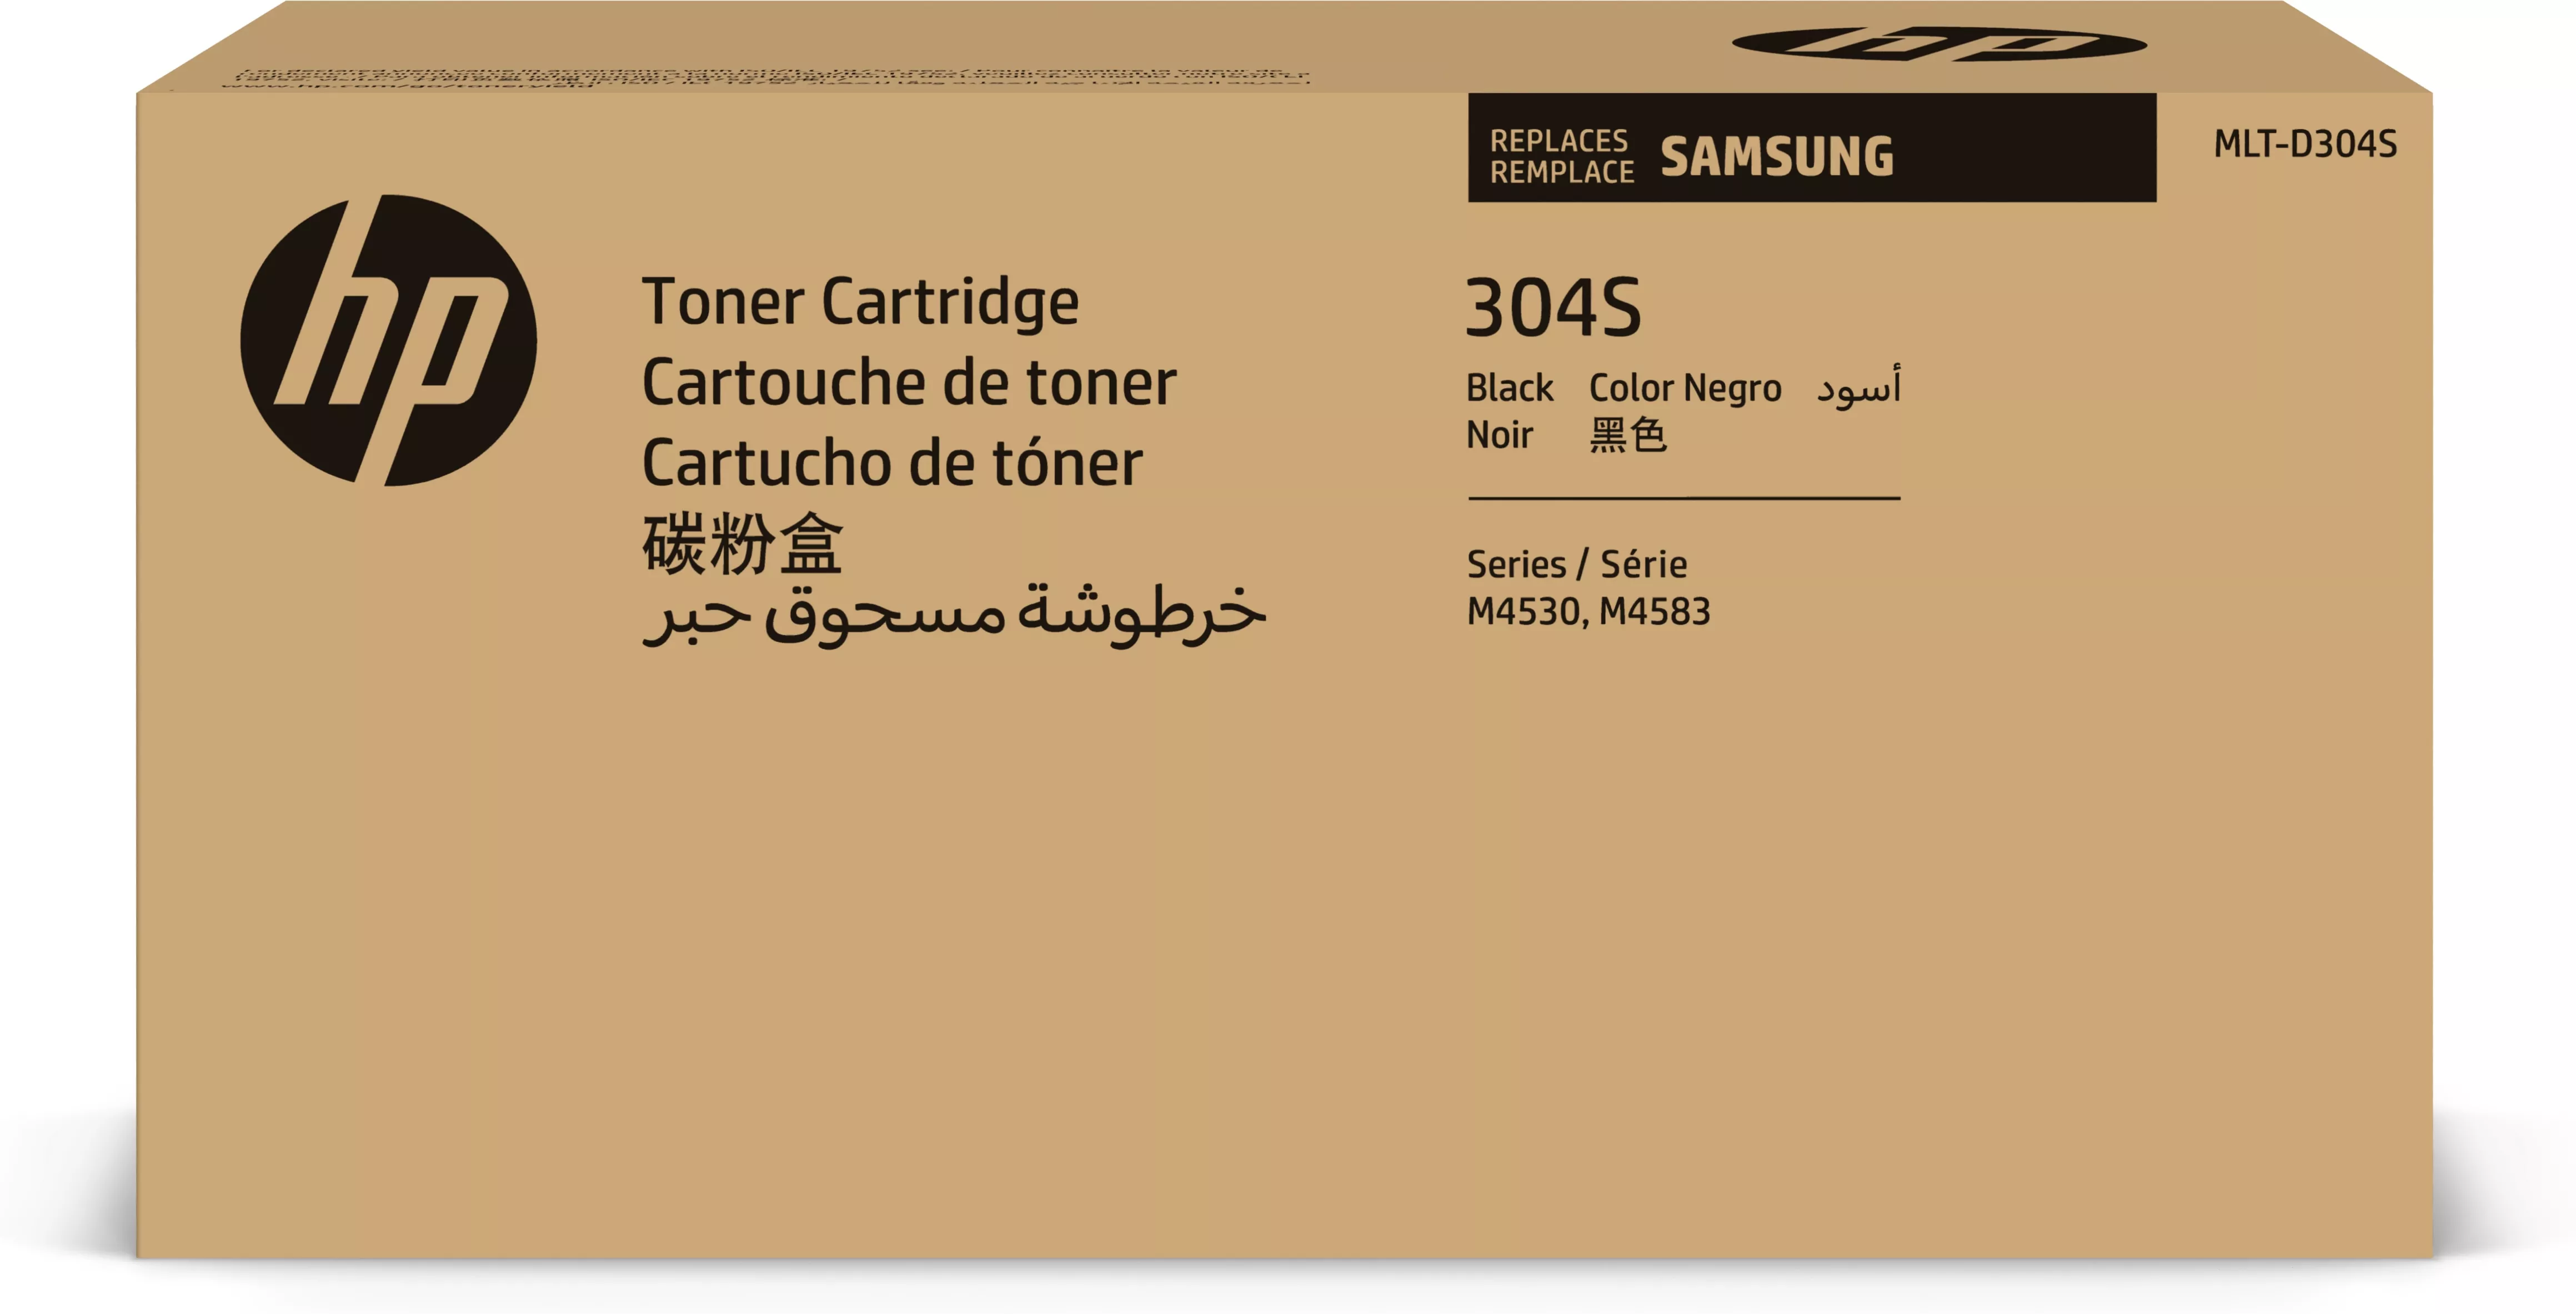 Achat HP Cartouche de toner noir Samsung MLT-D304S au meilleur prix